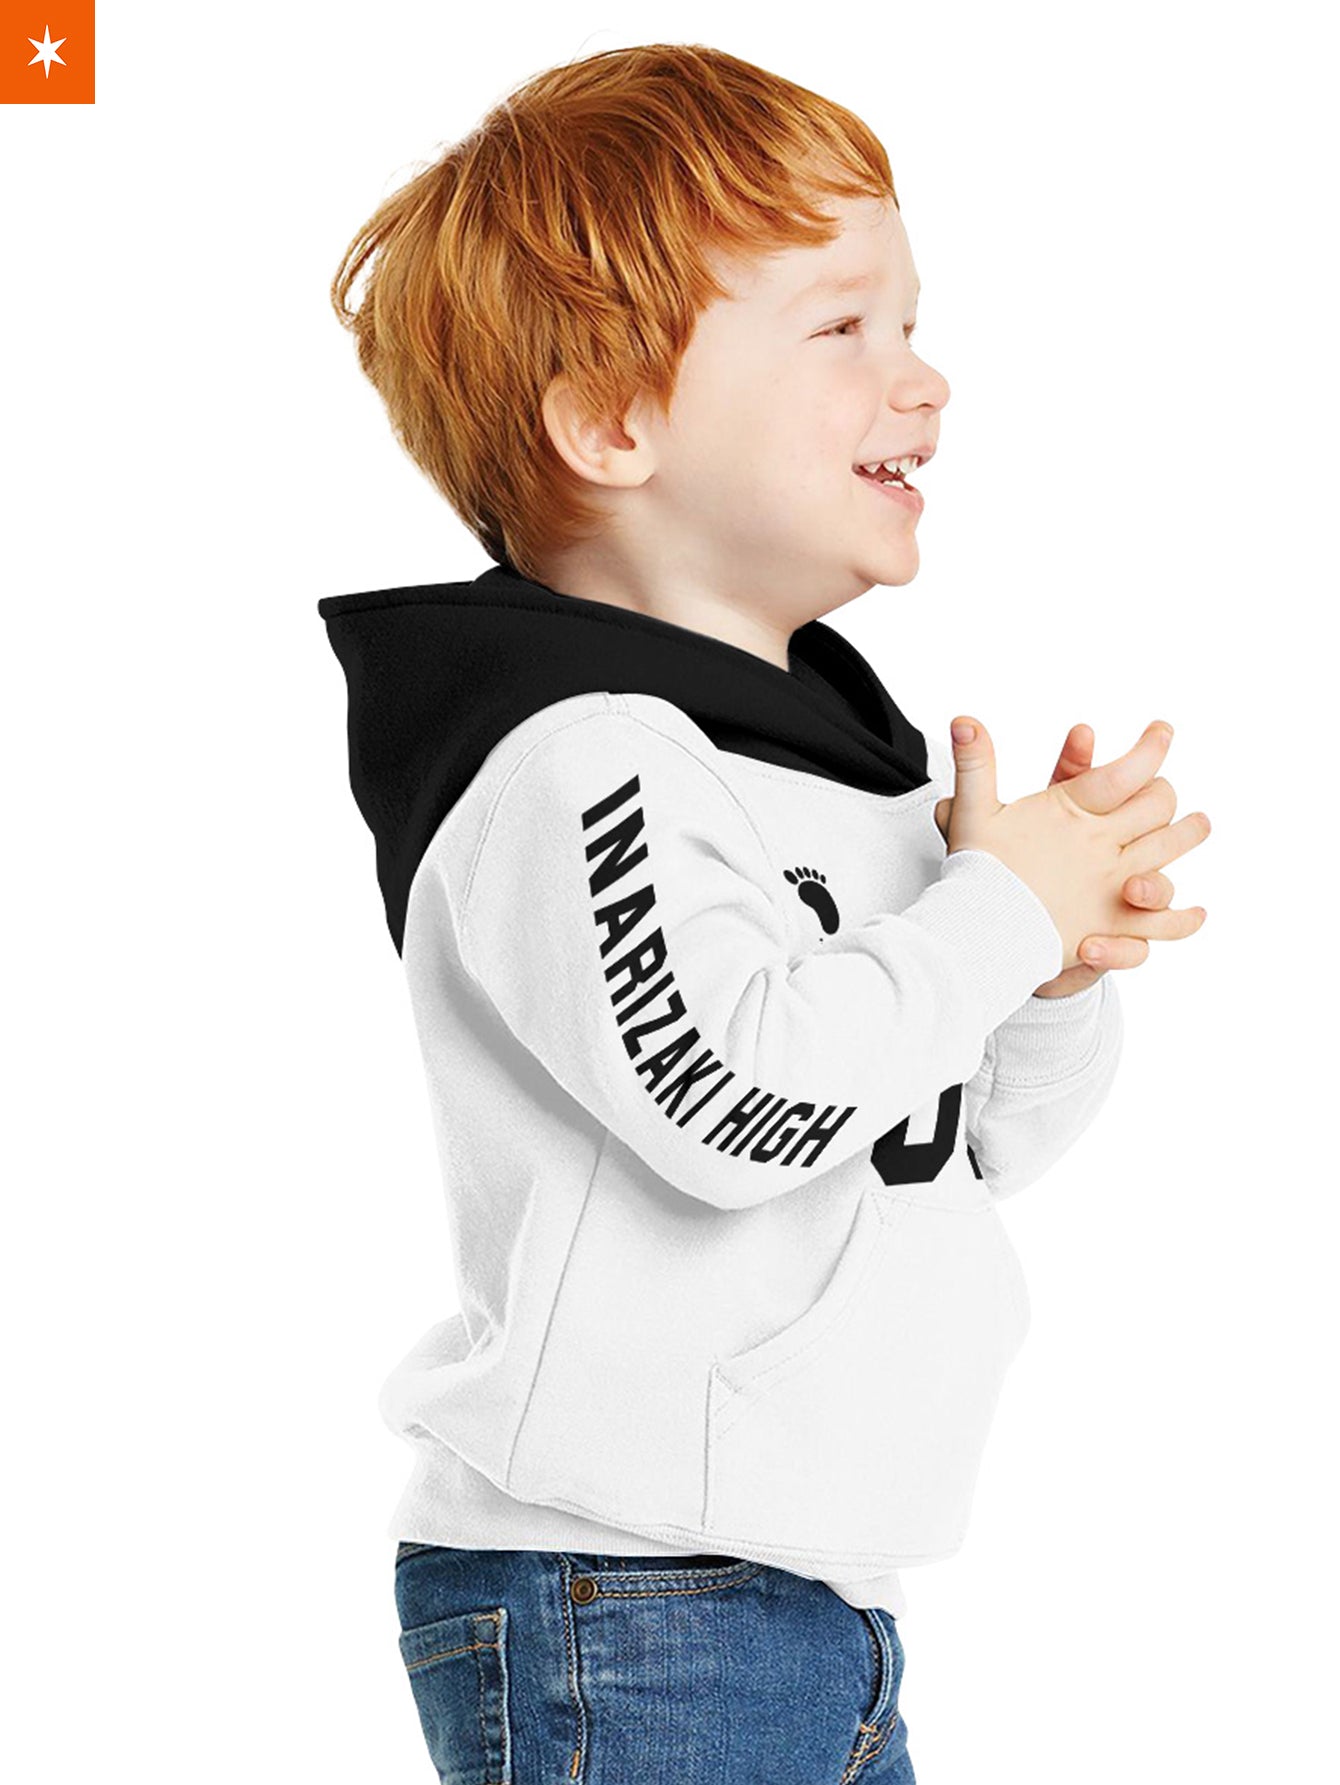 Fandomaniax - Personalized Inarizaki Libero Kids Unisex Pullover Hoodie